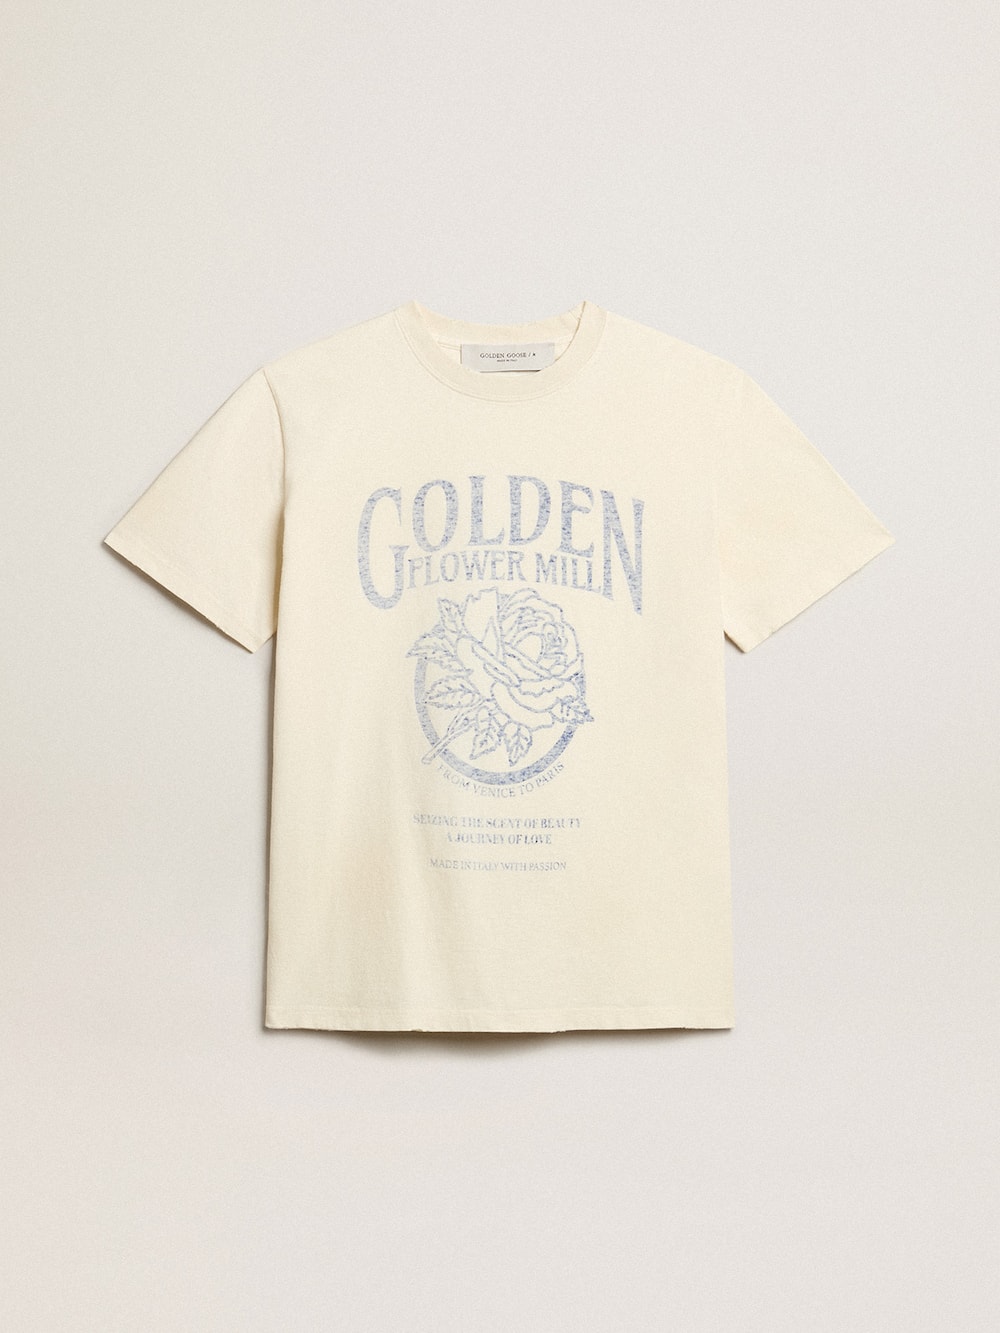 Golden Goose - T-shirt da donna color bianco vissuto con stampa stagionale in 